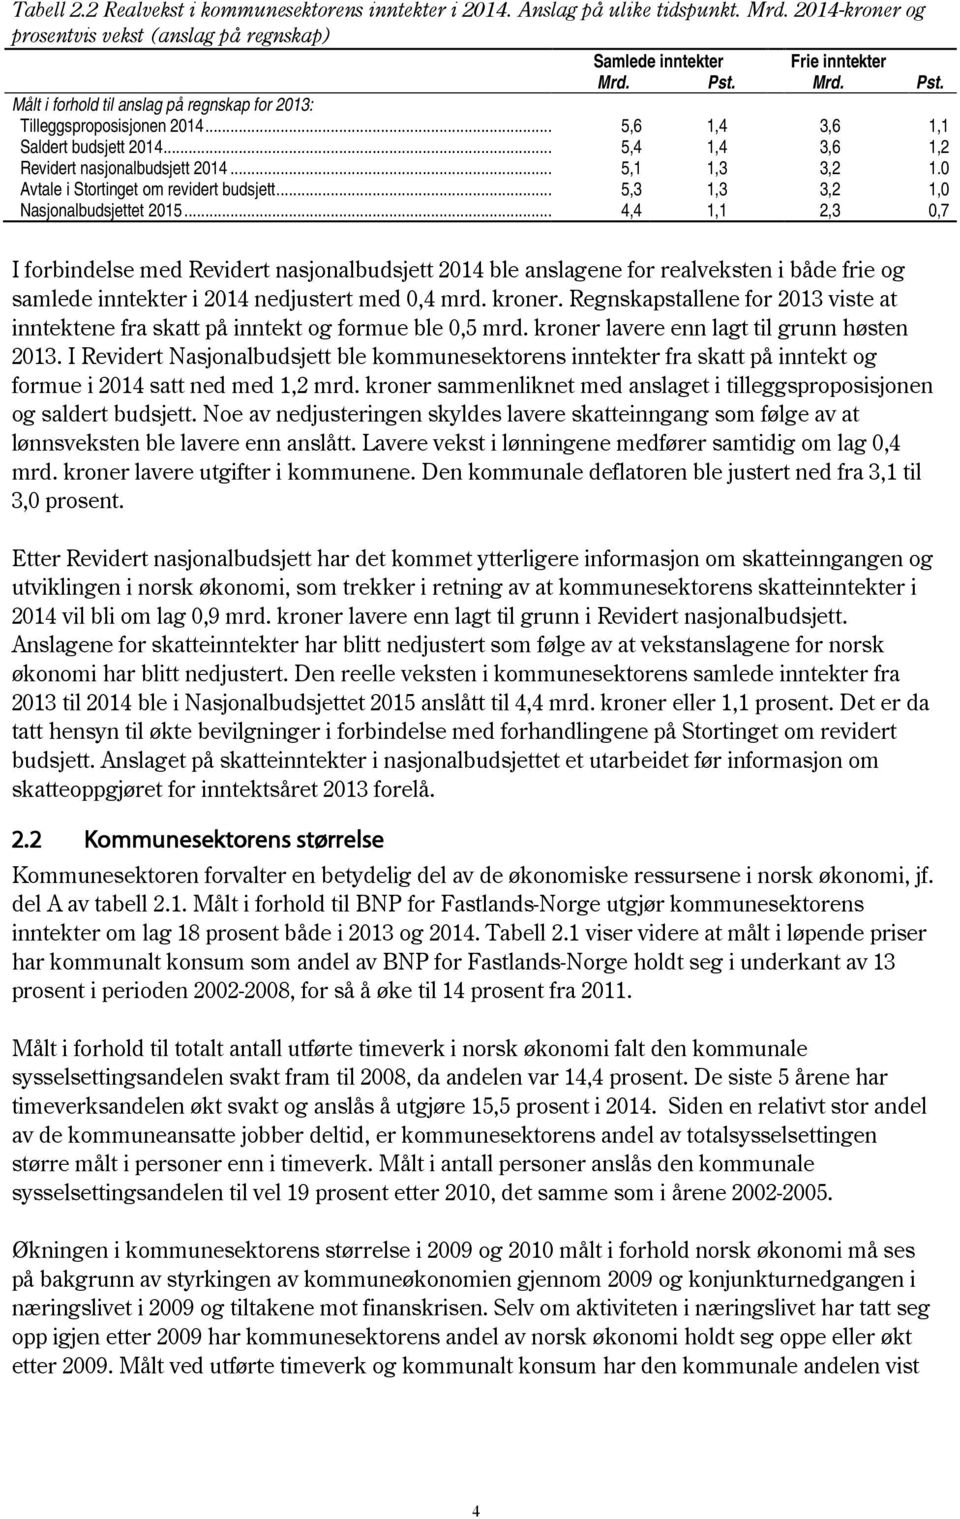 0 Avtale i Stortinget om revidert budsjett... 5,3 1,3 3,2 1,0 Nasjonalbudsjettet 2015.